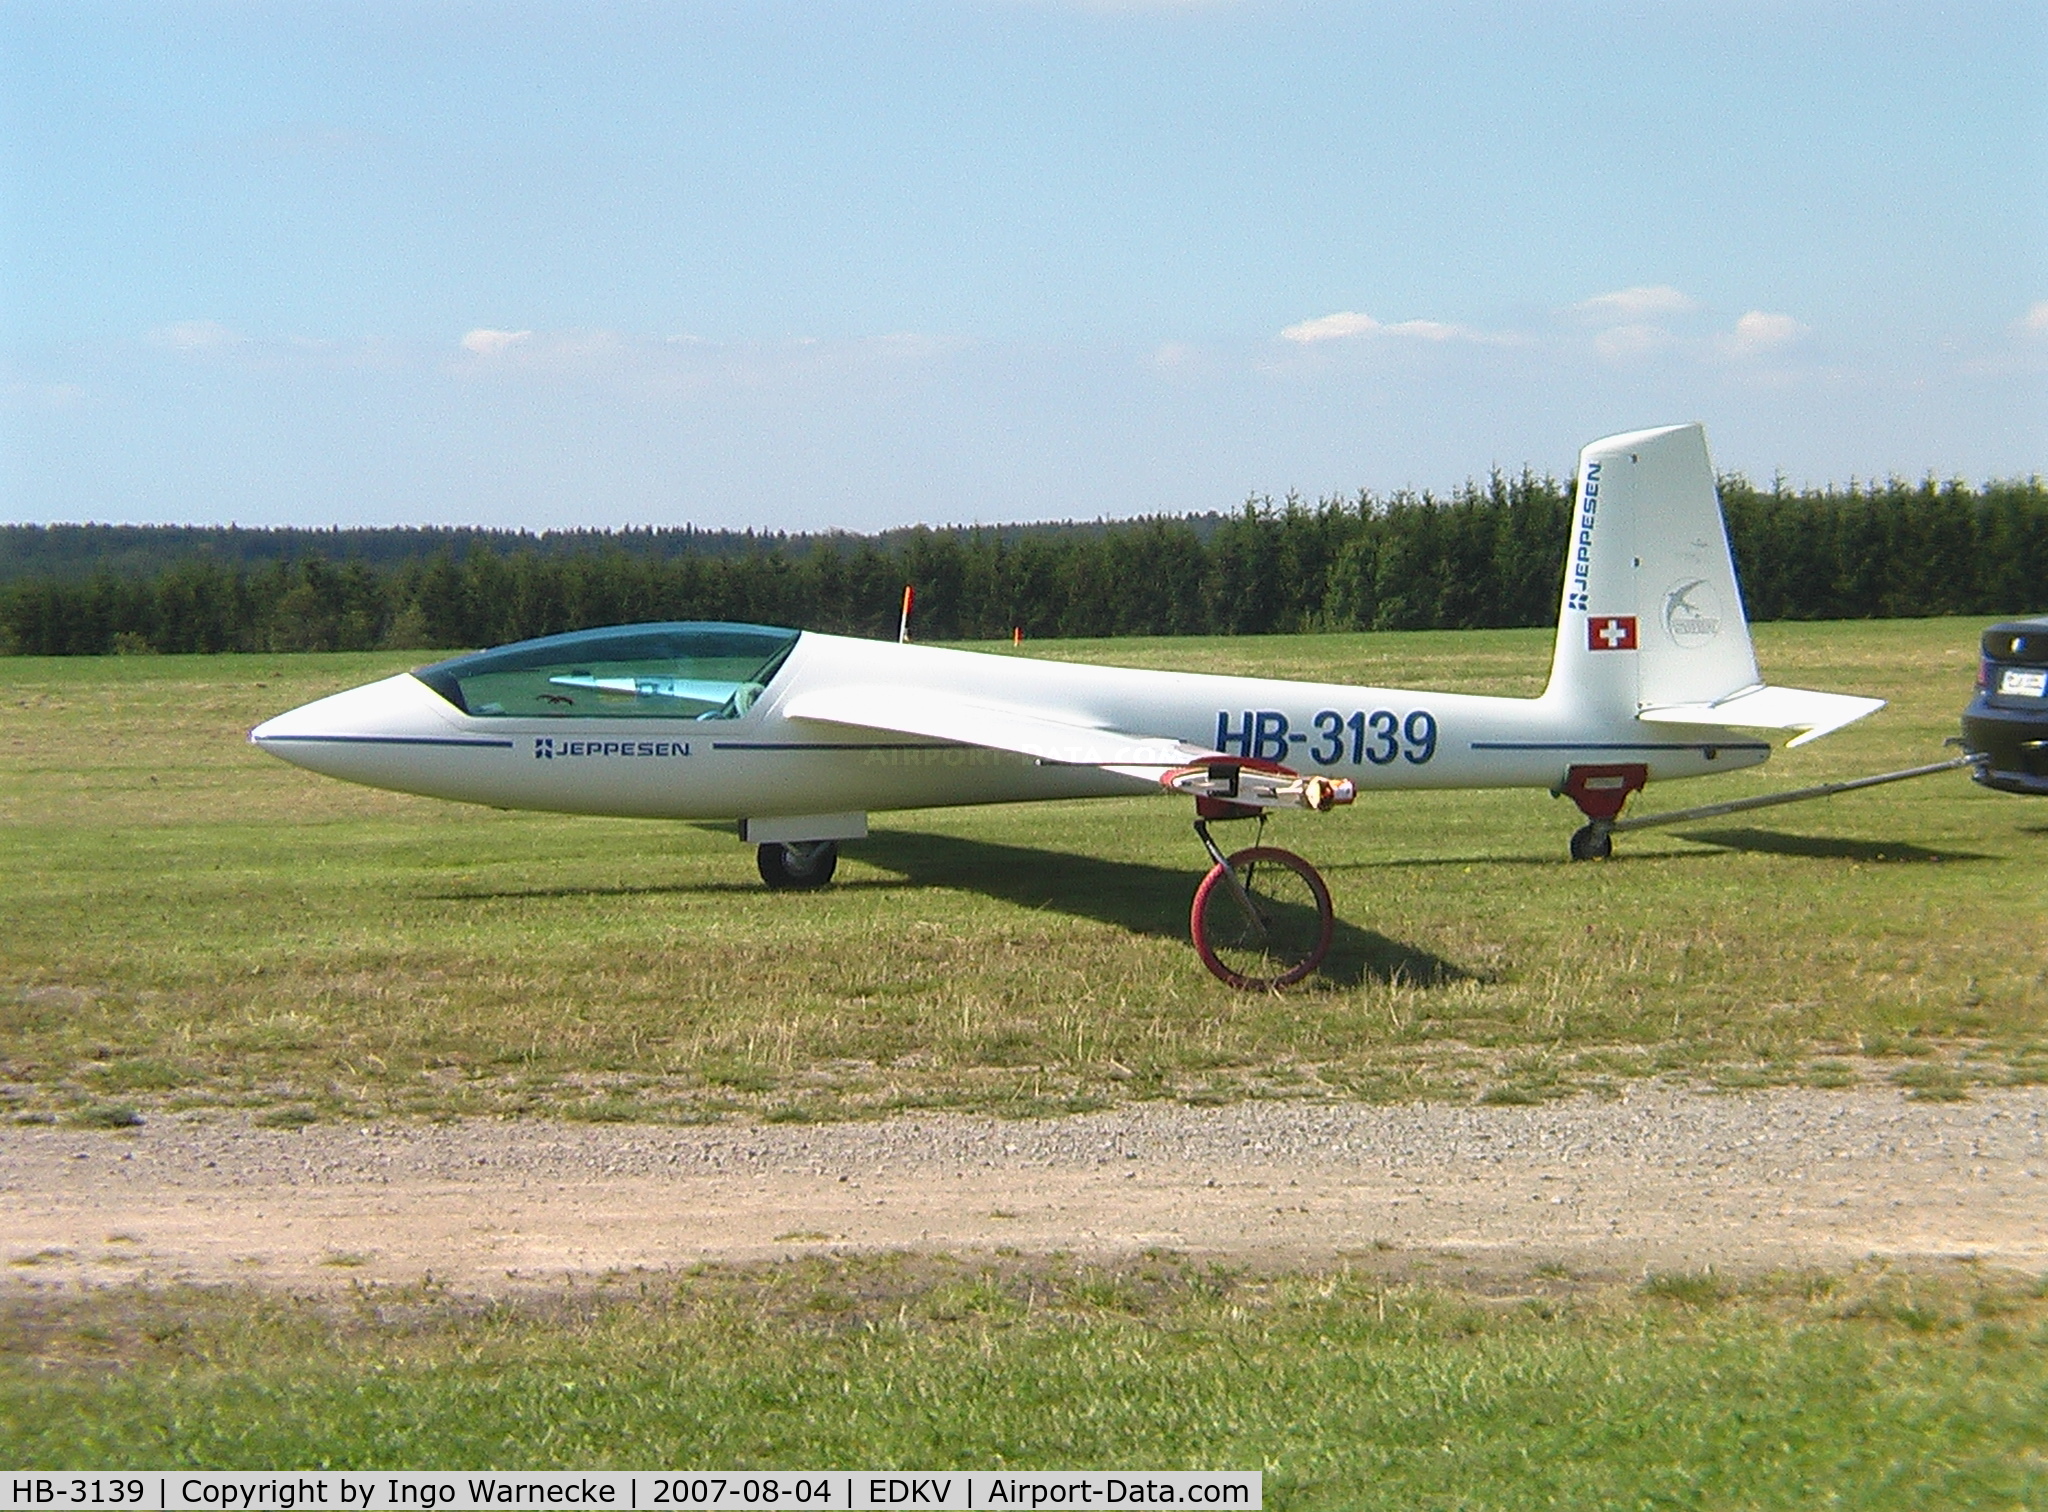 HB-3139, 1992 Marganski Swift S-1 C/N 105, Marganski Swift S-1 at Dahlemer-Binz airfield